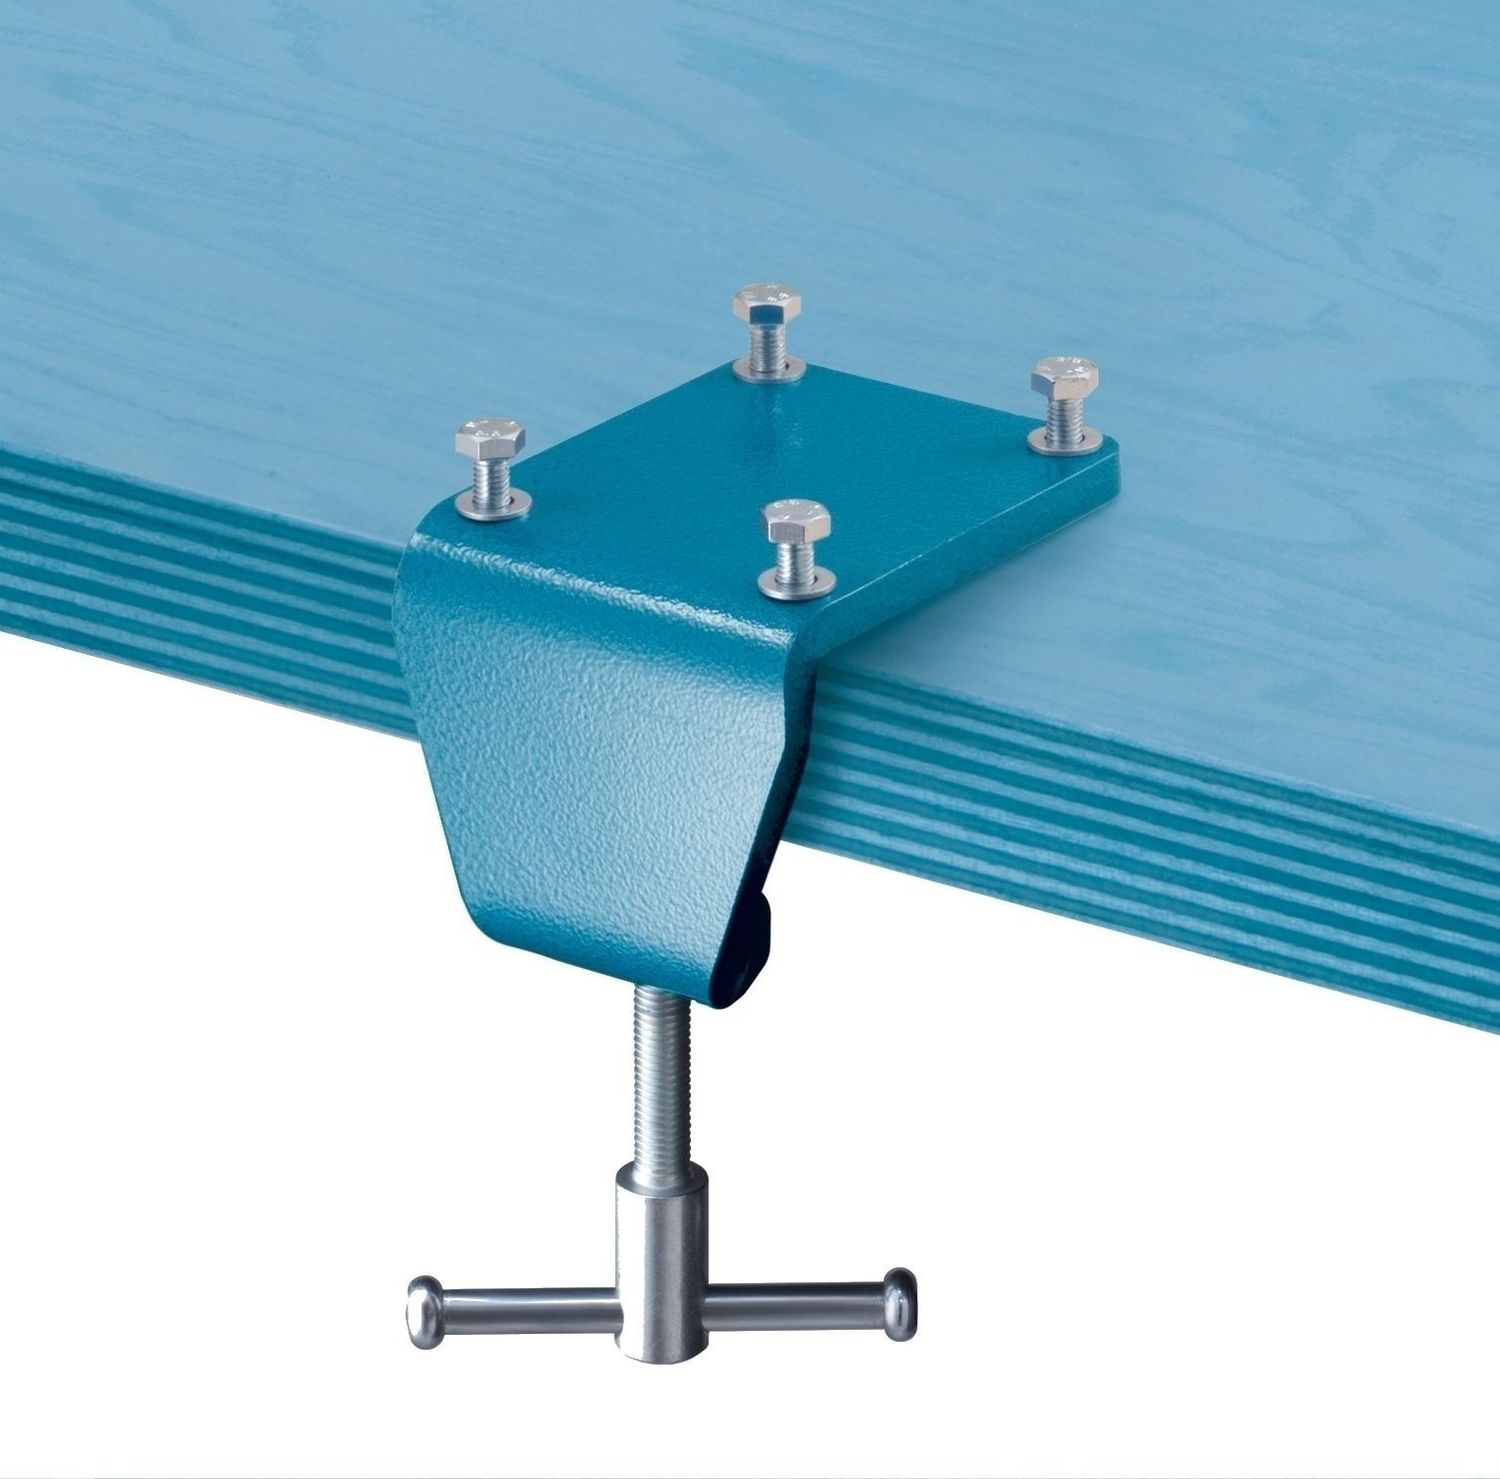 HEUER Tischklammer für Schraubstock mit Backenbreite 120 mm